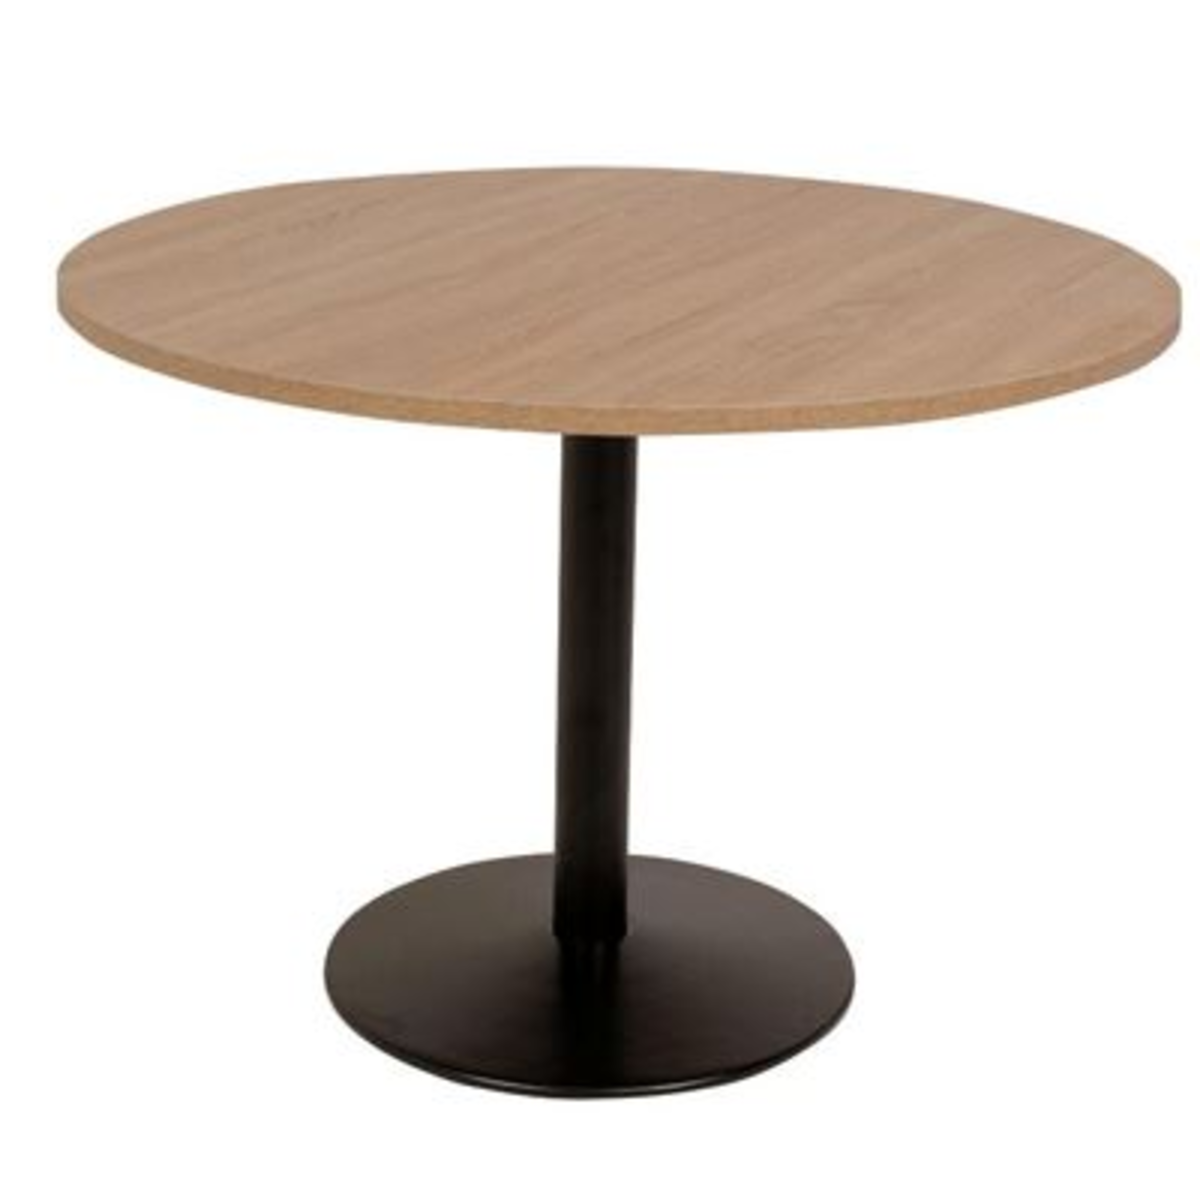 Table de restaurant ronde Lamidur chêne cÃ©rusÃ© et noir 110 cm